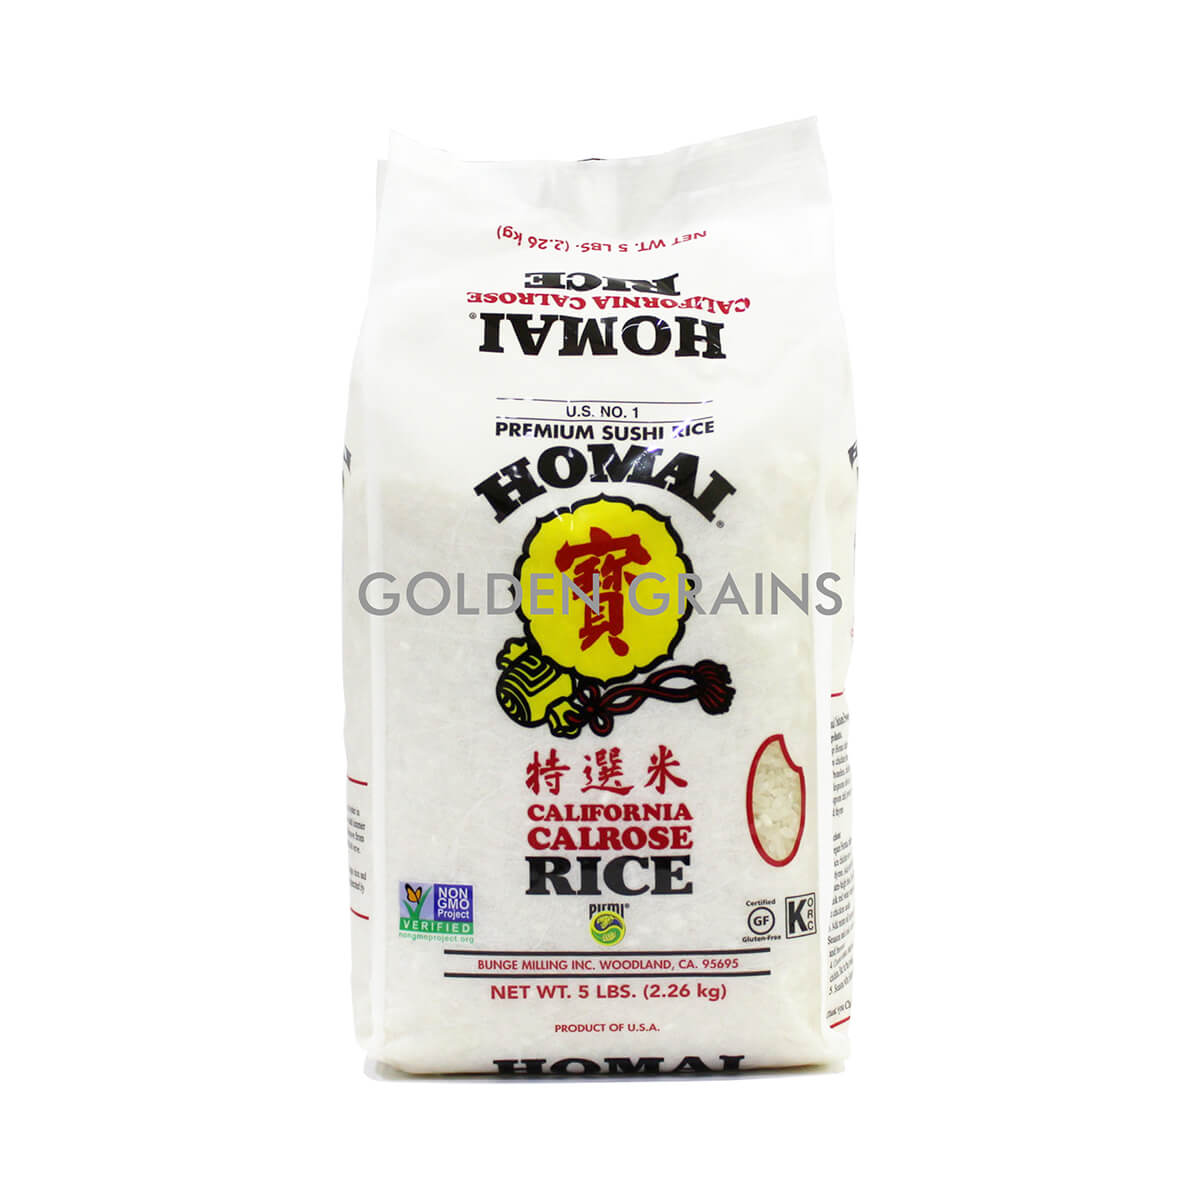 Golden Grains Homai - Calrose Rice 2.26KG - Front.jpg